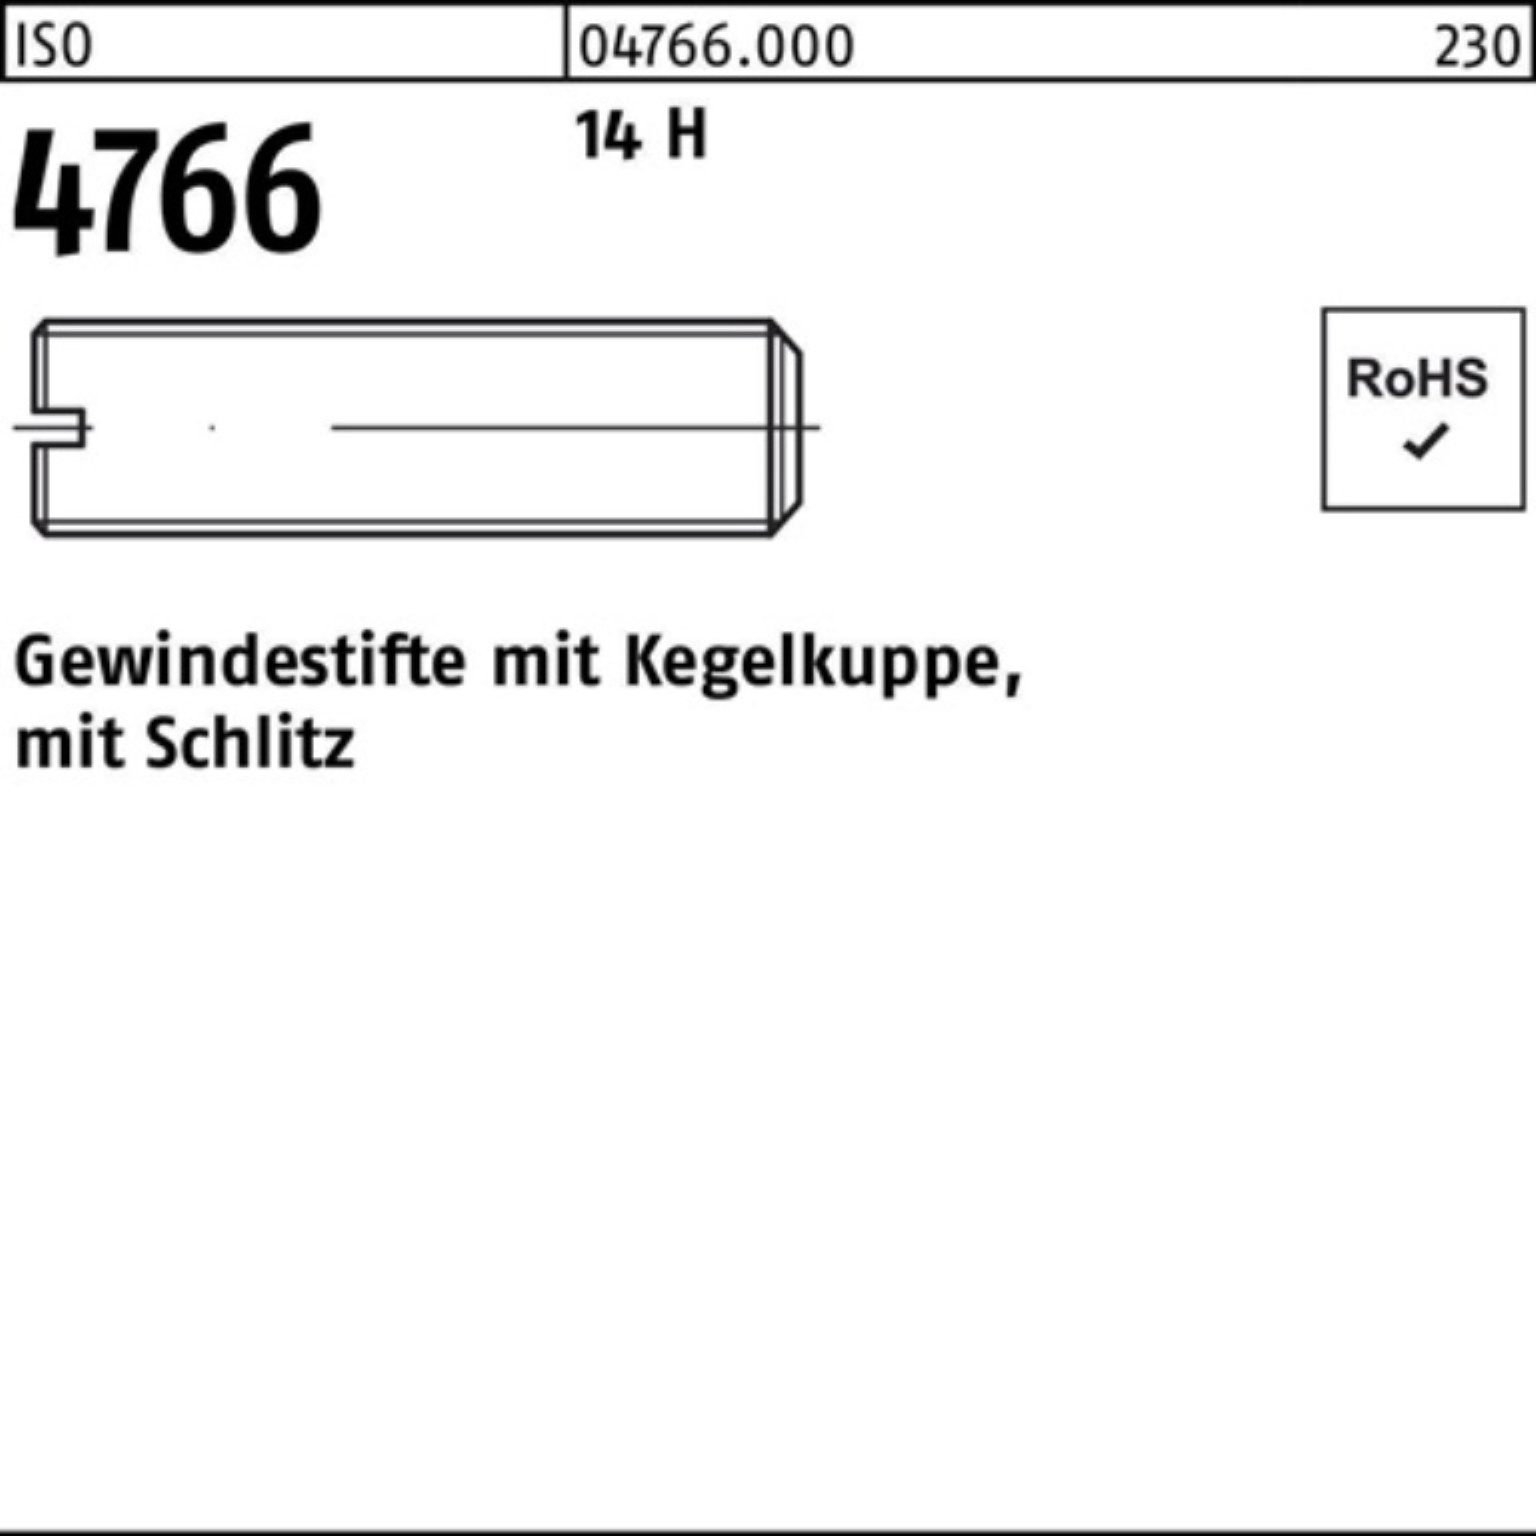 Pack Kegelkuppe/Schlitz 5 Reyher 200er St M3x ISO 14 H 200 4766 Gewindestift Gewindebolzen